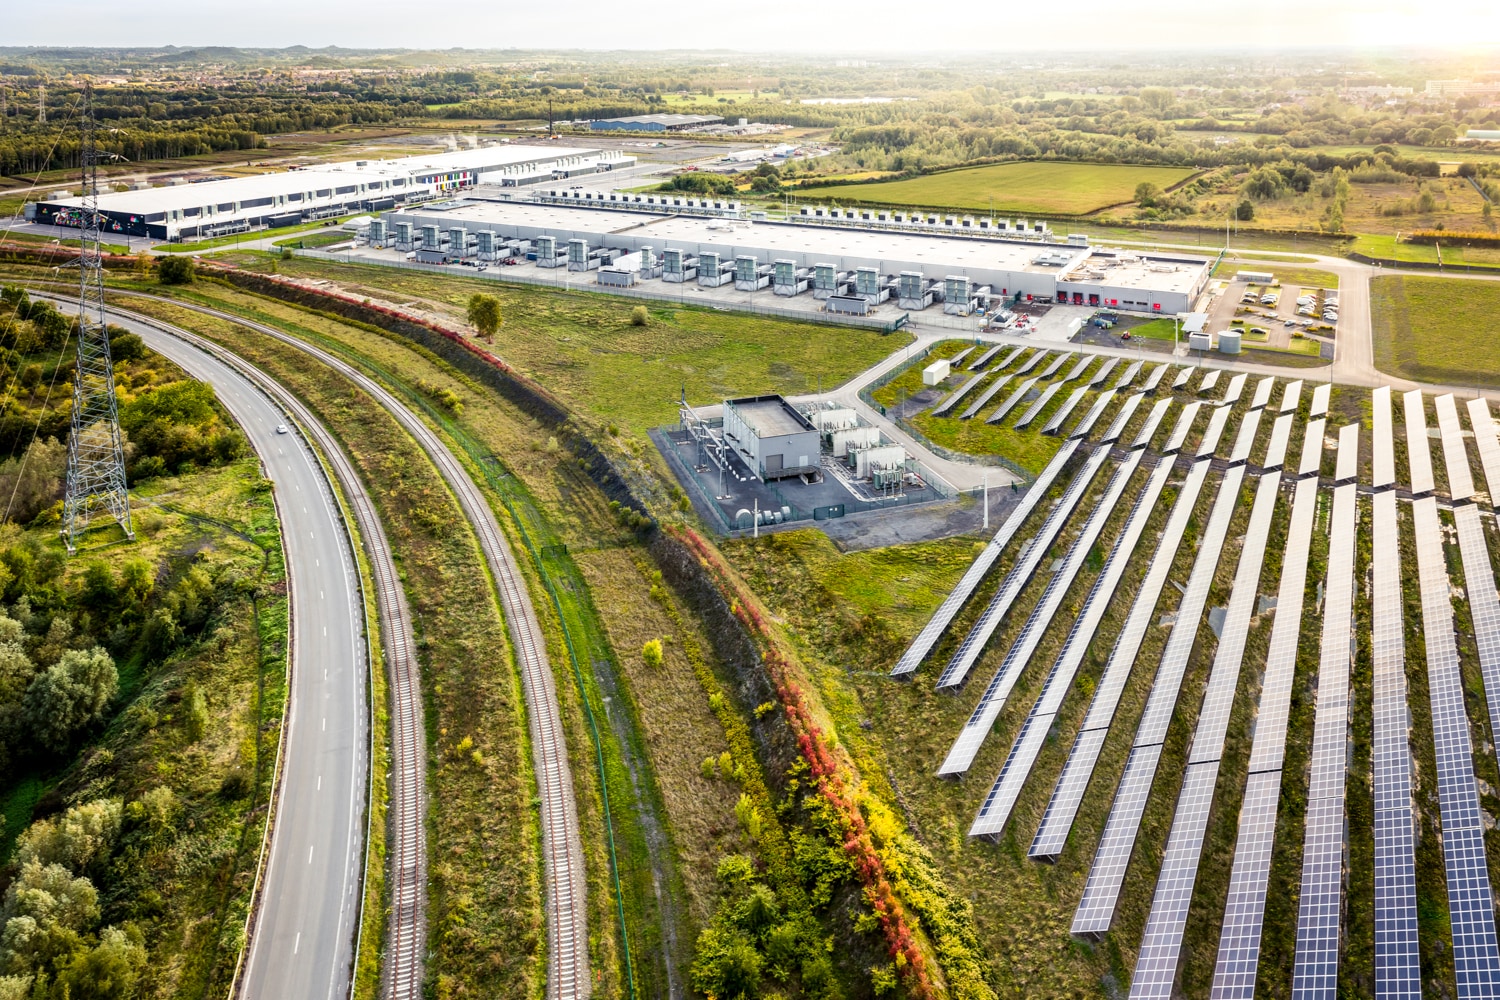 Google solar field at the St. Ghislain, Belgium data center.  Image courtesy of Google. 